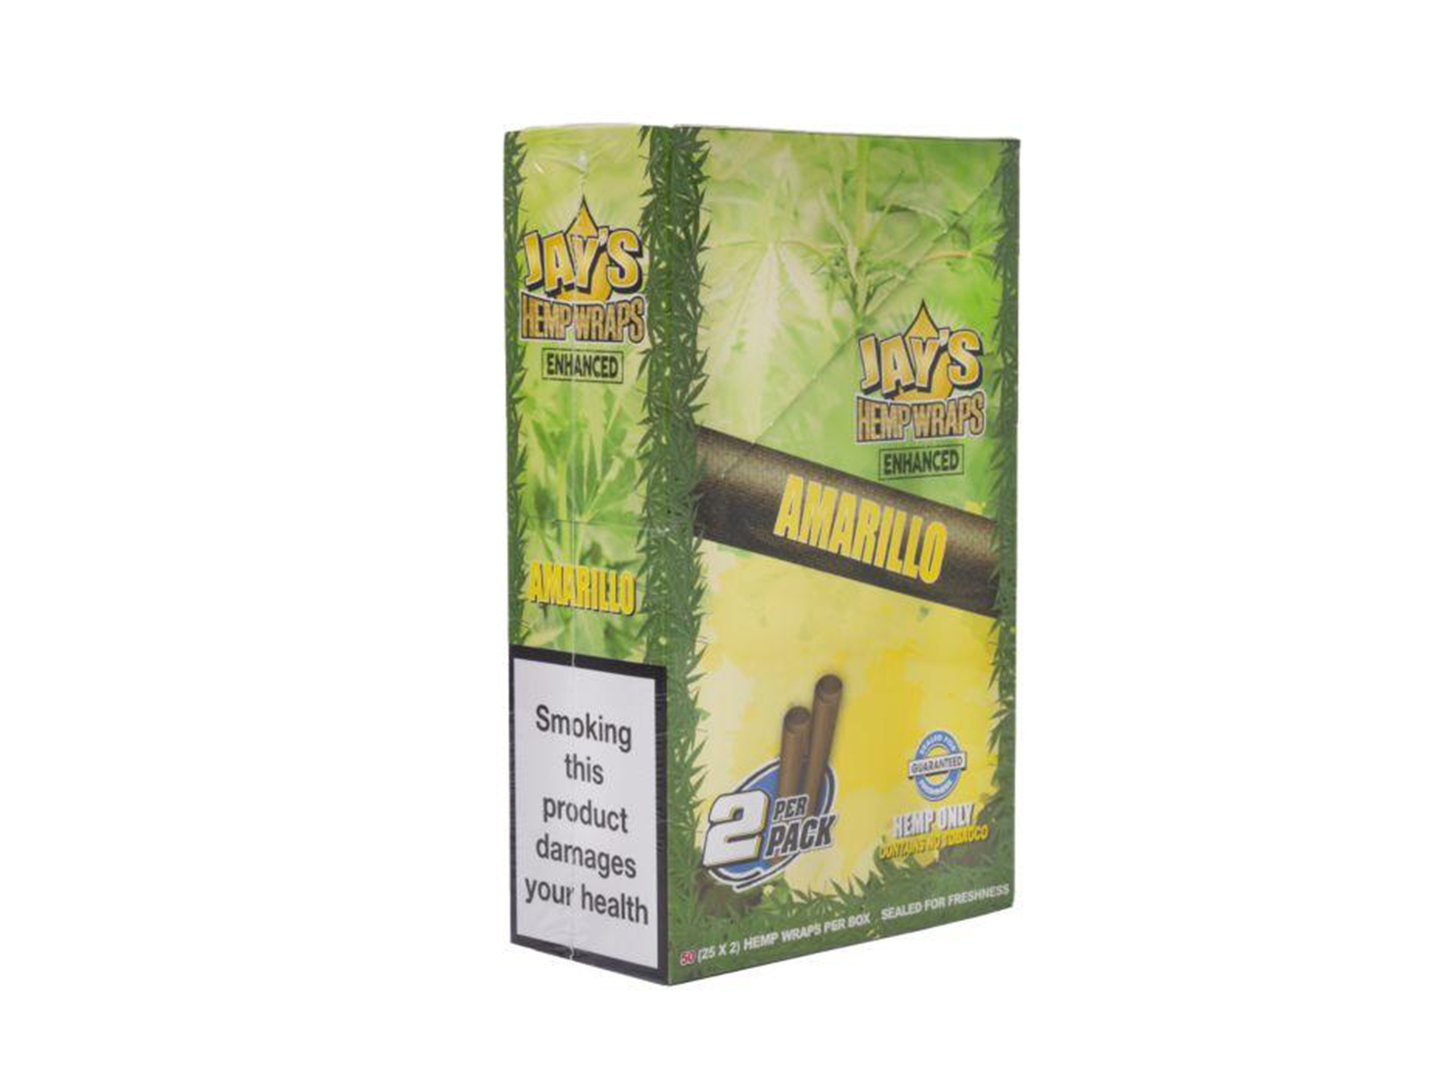 JUICY Enhanced Hemp Wraps - 25 Packs Per Box - 2 Blunt Wraps Per Pack - VIR Wholesale